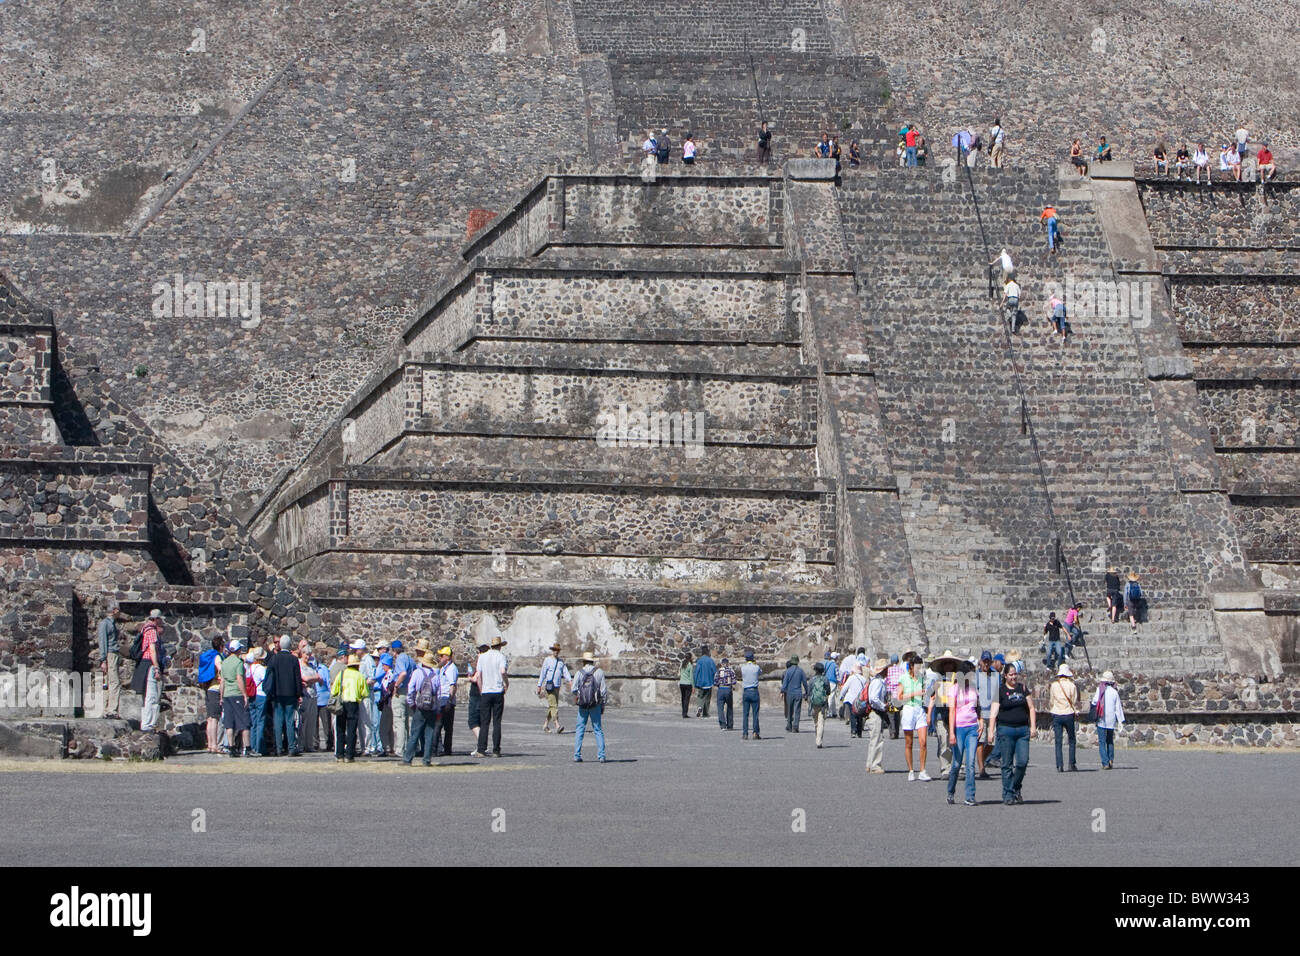 Mexique Amérique Centrale Amérique latine ruines Teotihuacan site du patrimoine mondial de l'Amérique du Sud de la pyramide de la Lune Februa Banque D'Images